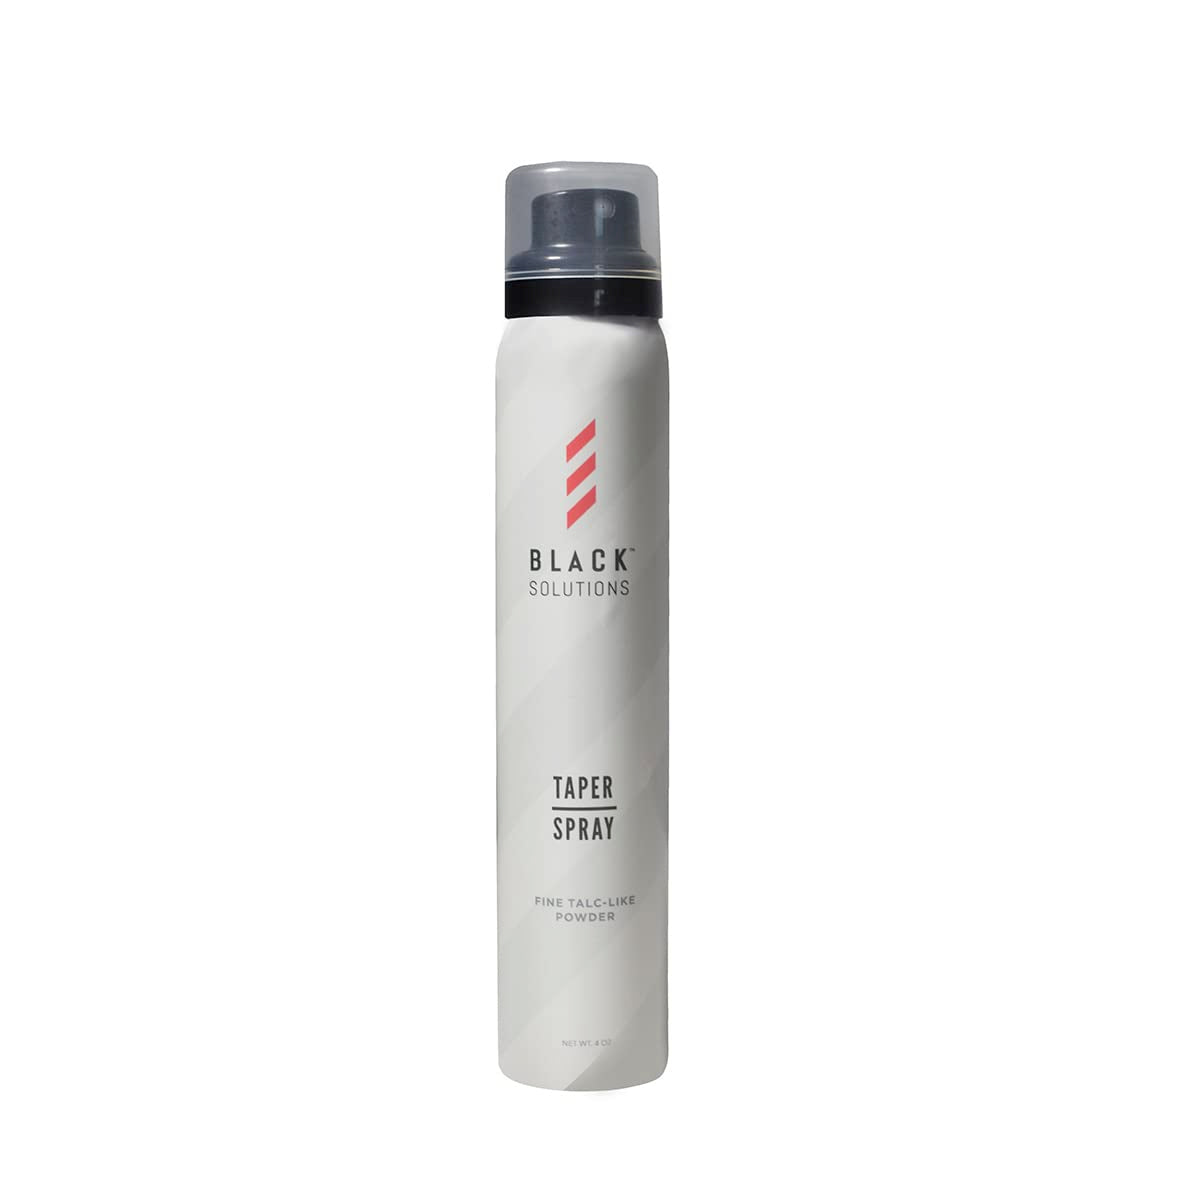 Black Solutions Taper Spray